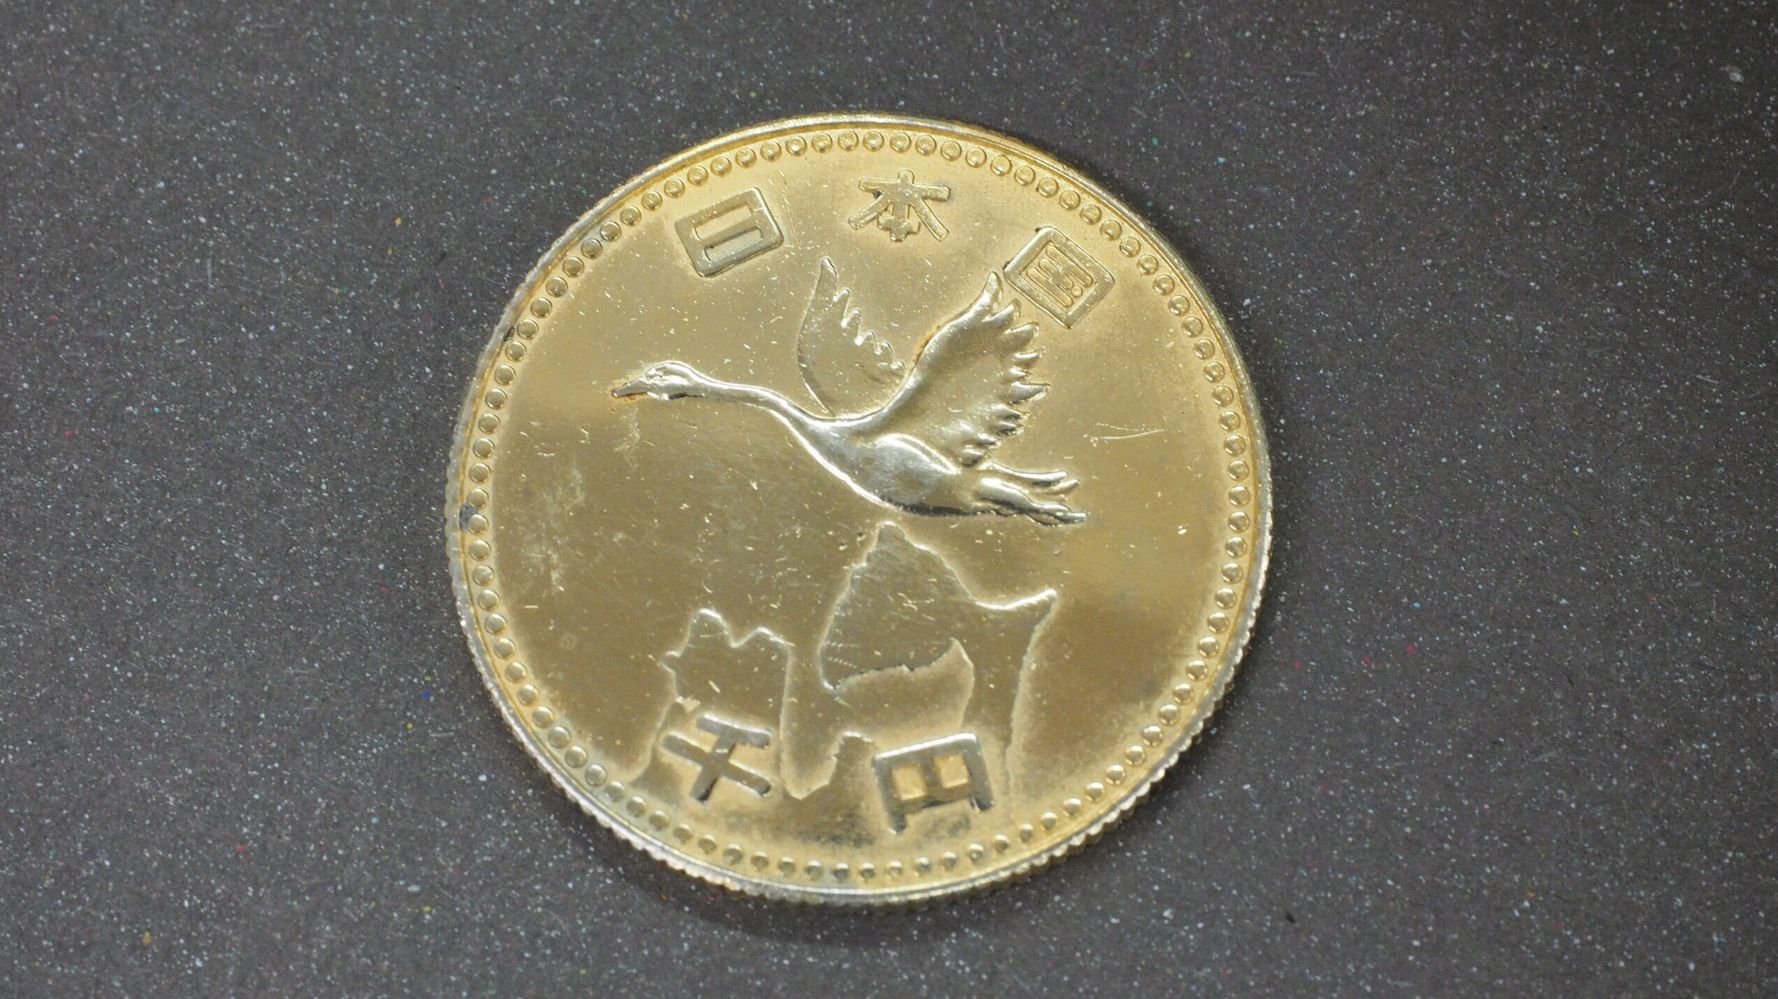 日本国 千円」と刻印された謎のメダル。その正体を探ってみたが、全く